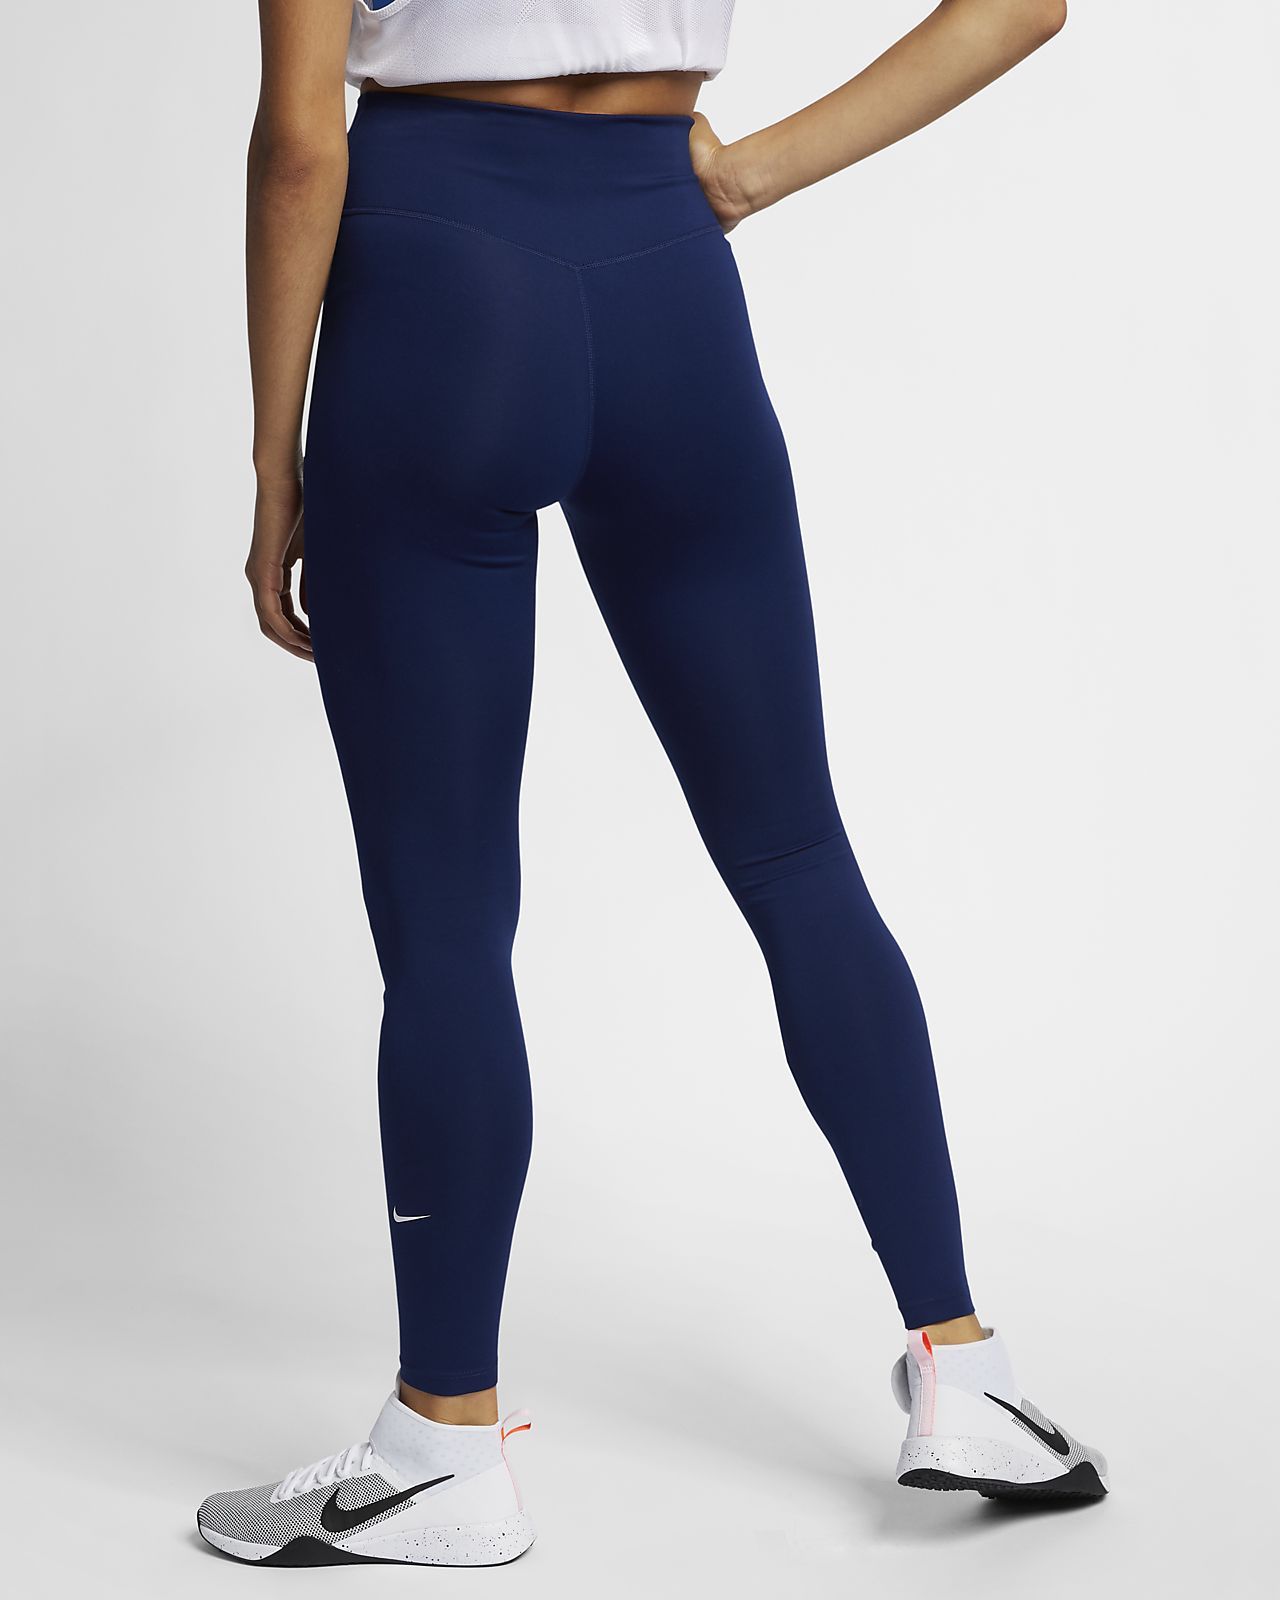 Nike launch leggings designed for 